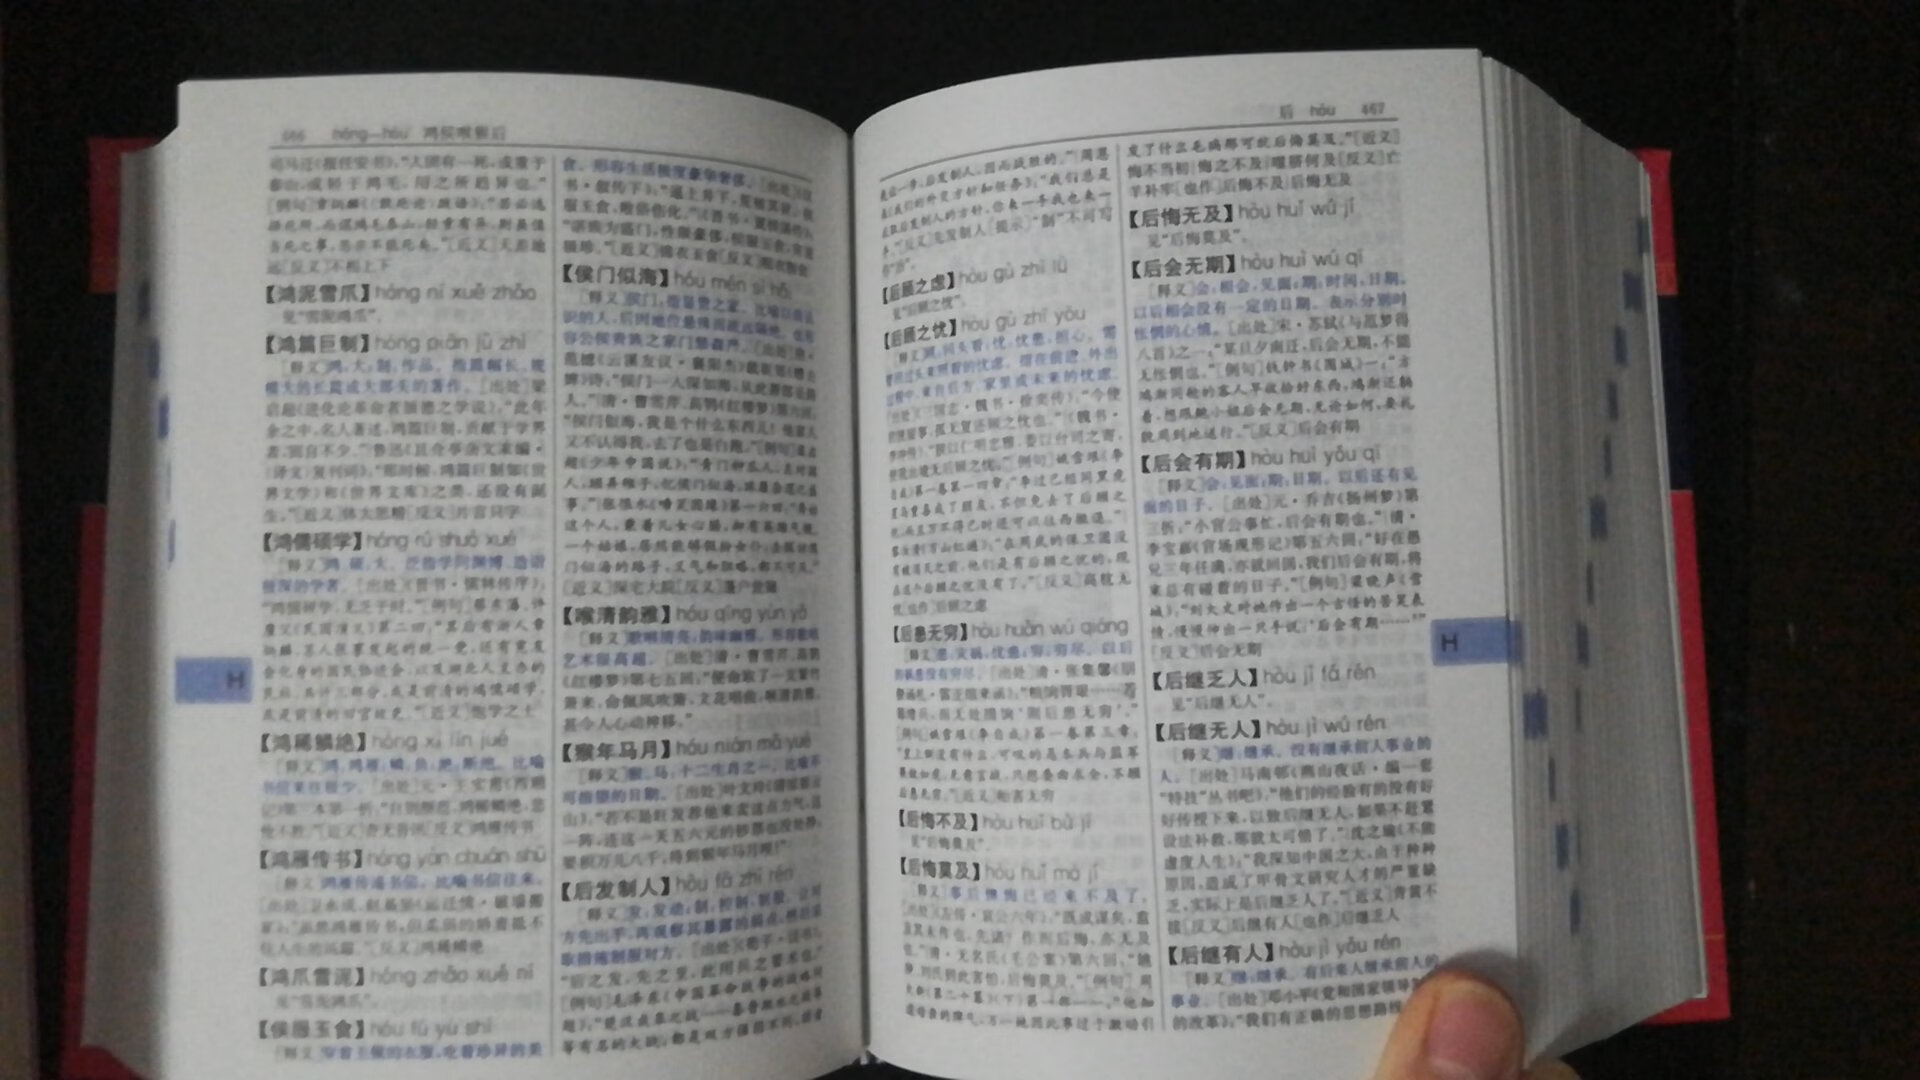 这个成语大词典是小开本的，相对的里面字体就小了点。现在先用着，要大开本的以后再买了。